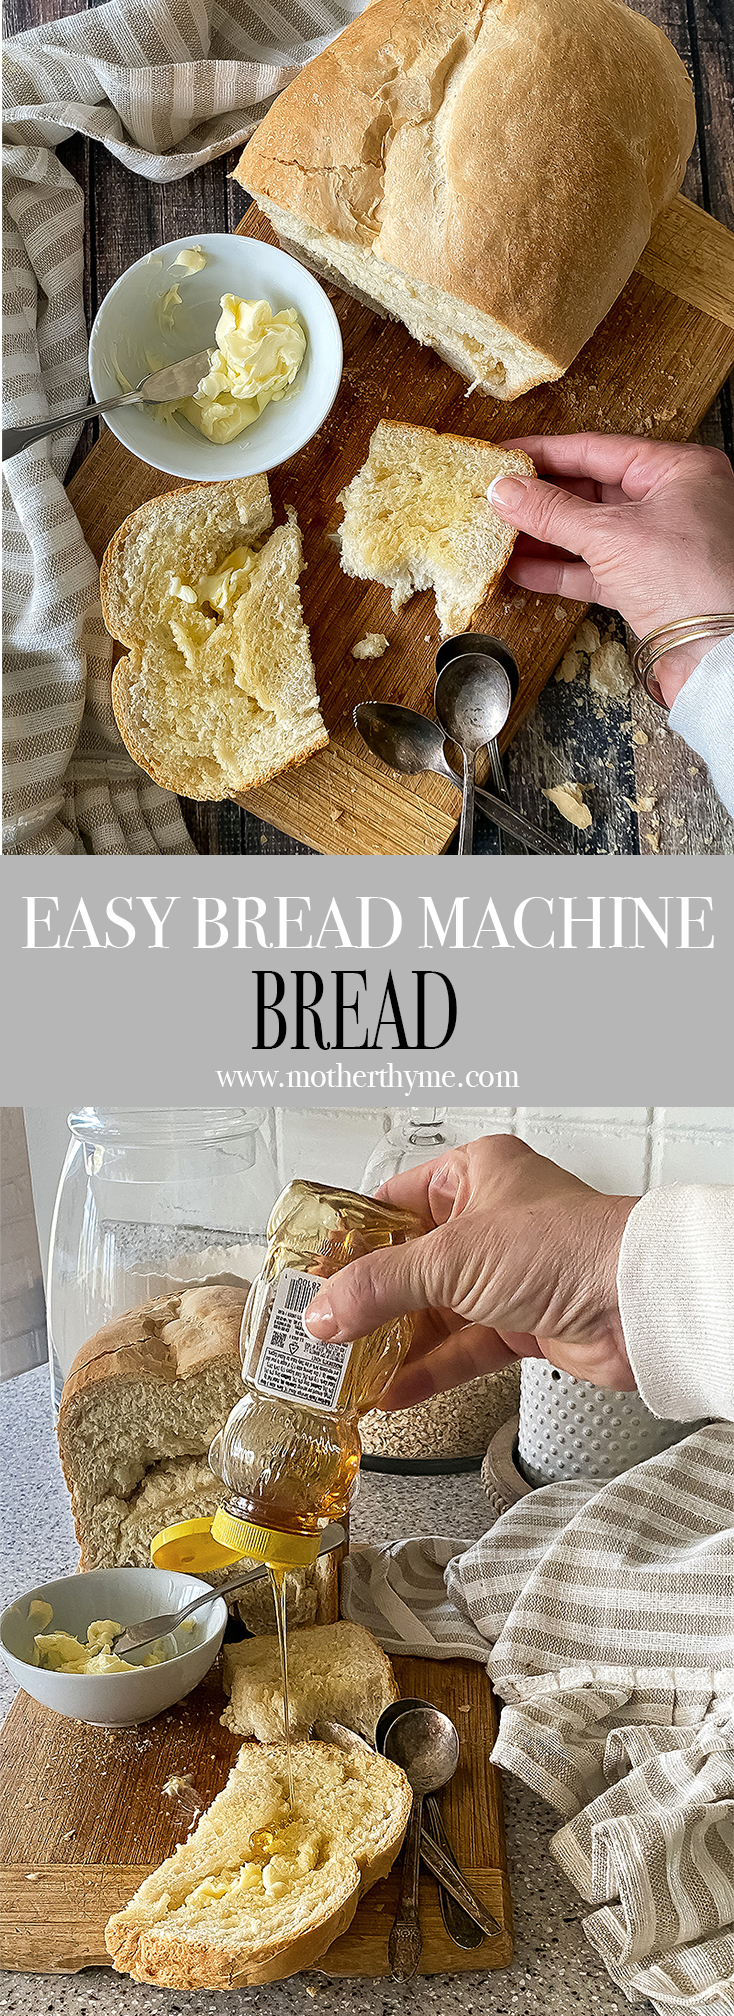 EASY BREAD MACHINE BREAD - BASIC LOAF